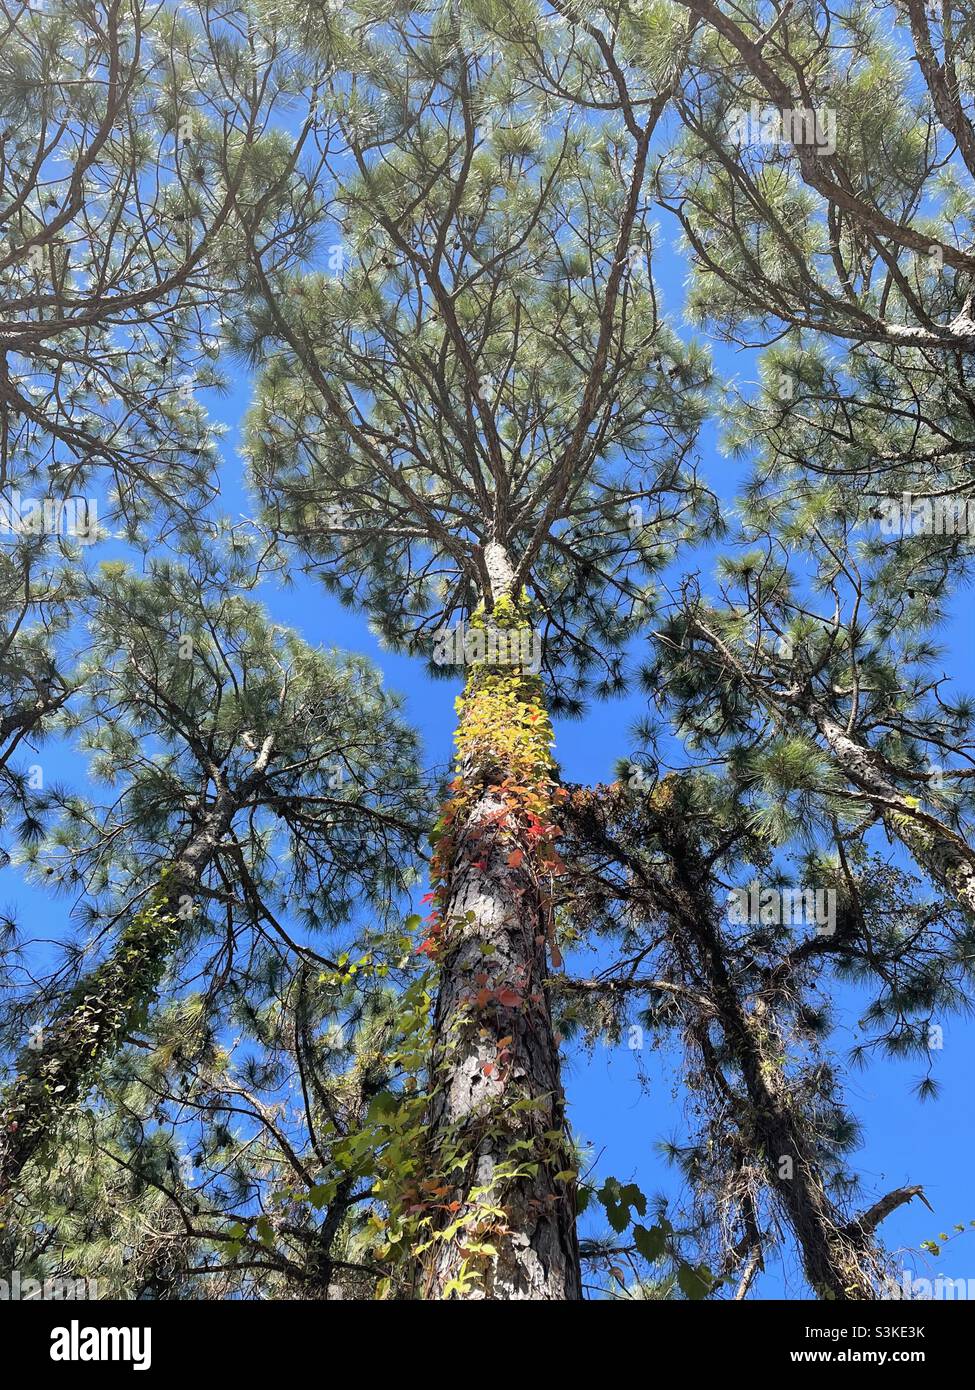 Perspektivische Ansicht von hohen Kiefern mit herbstlichen Reben, die den Baum aufwachsen Stockfoto